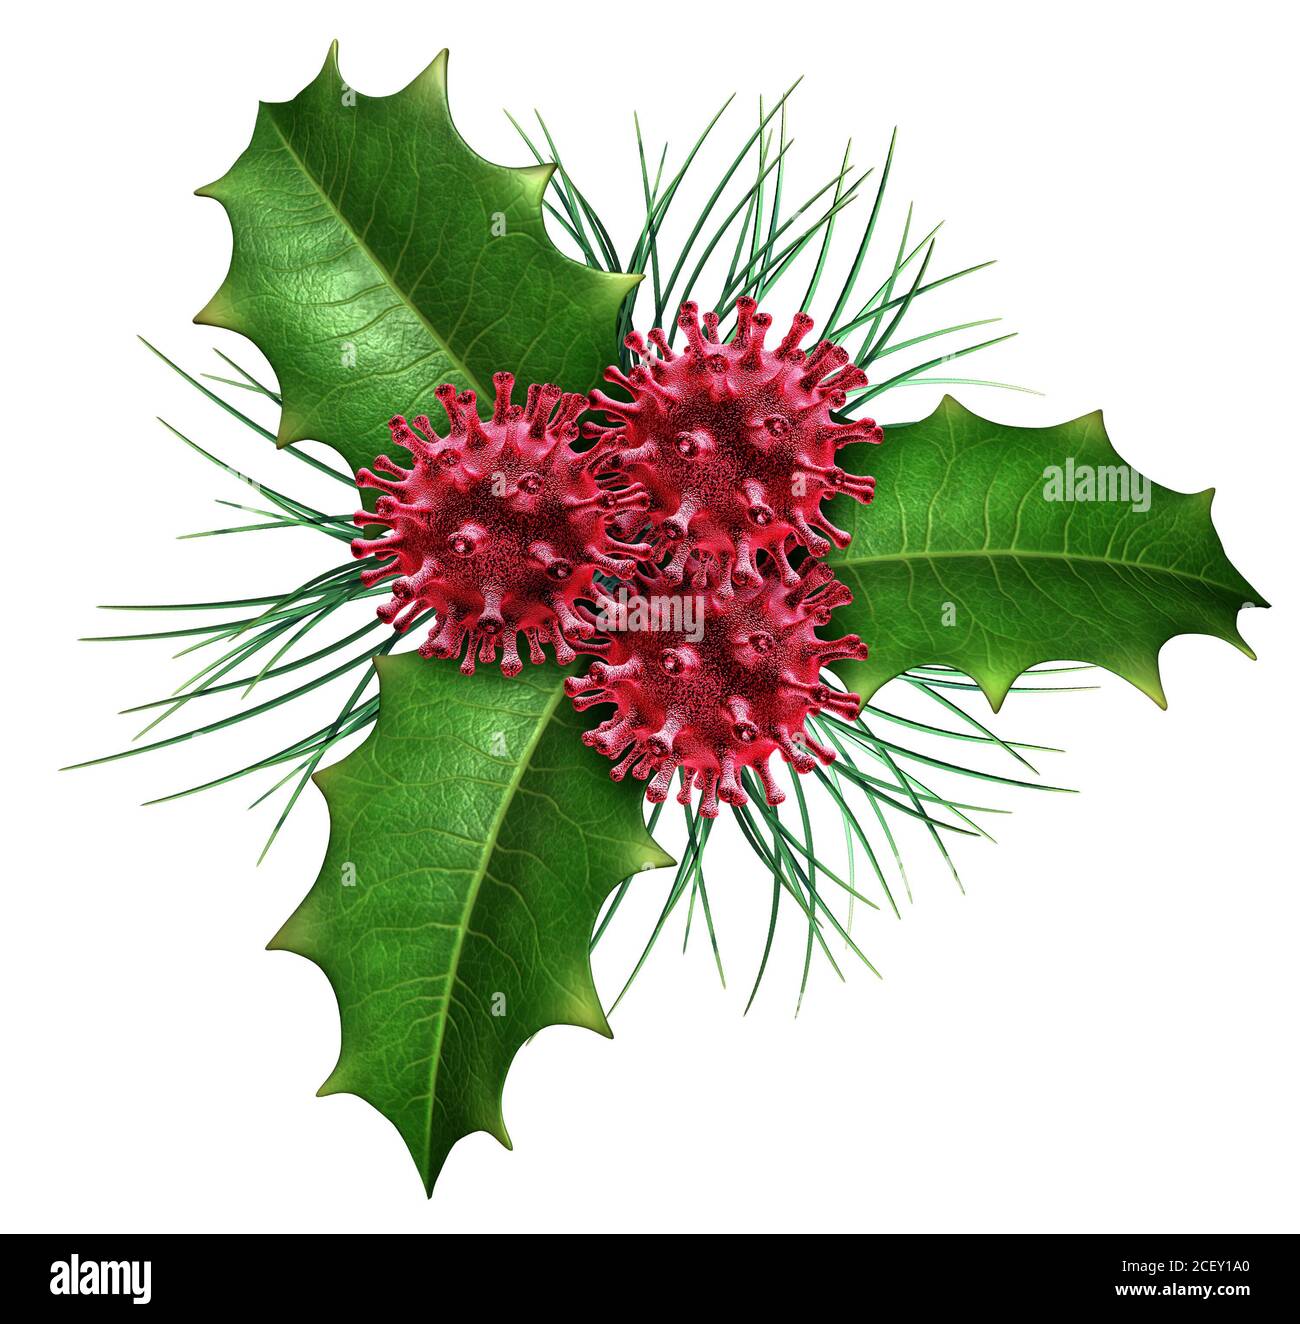 Salute e vacanze invernali come Natale agrifoglio con bacche rosse a forma di cellule virali come simbolo medico e di medicina per l'influenza stagionale. Foto Stock